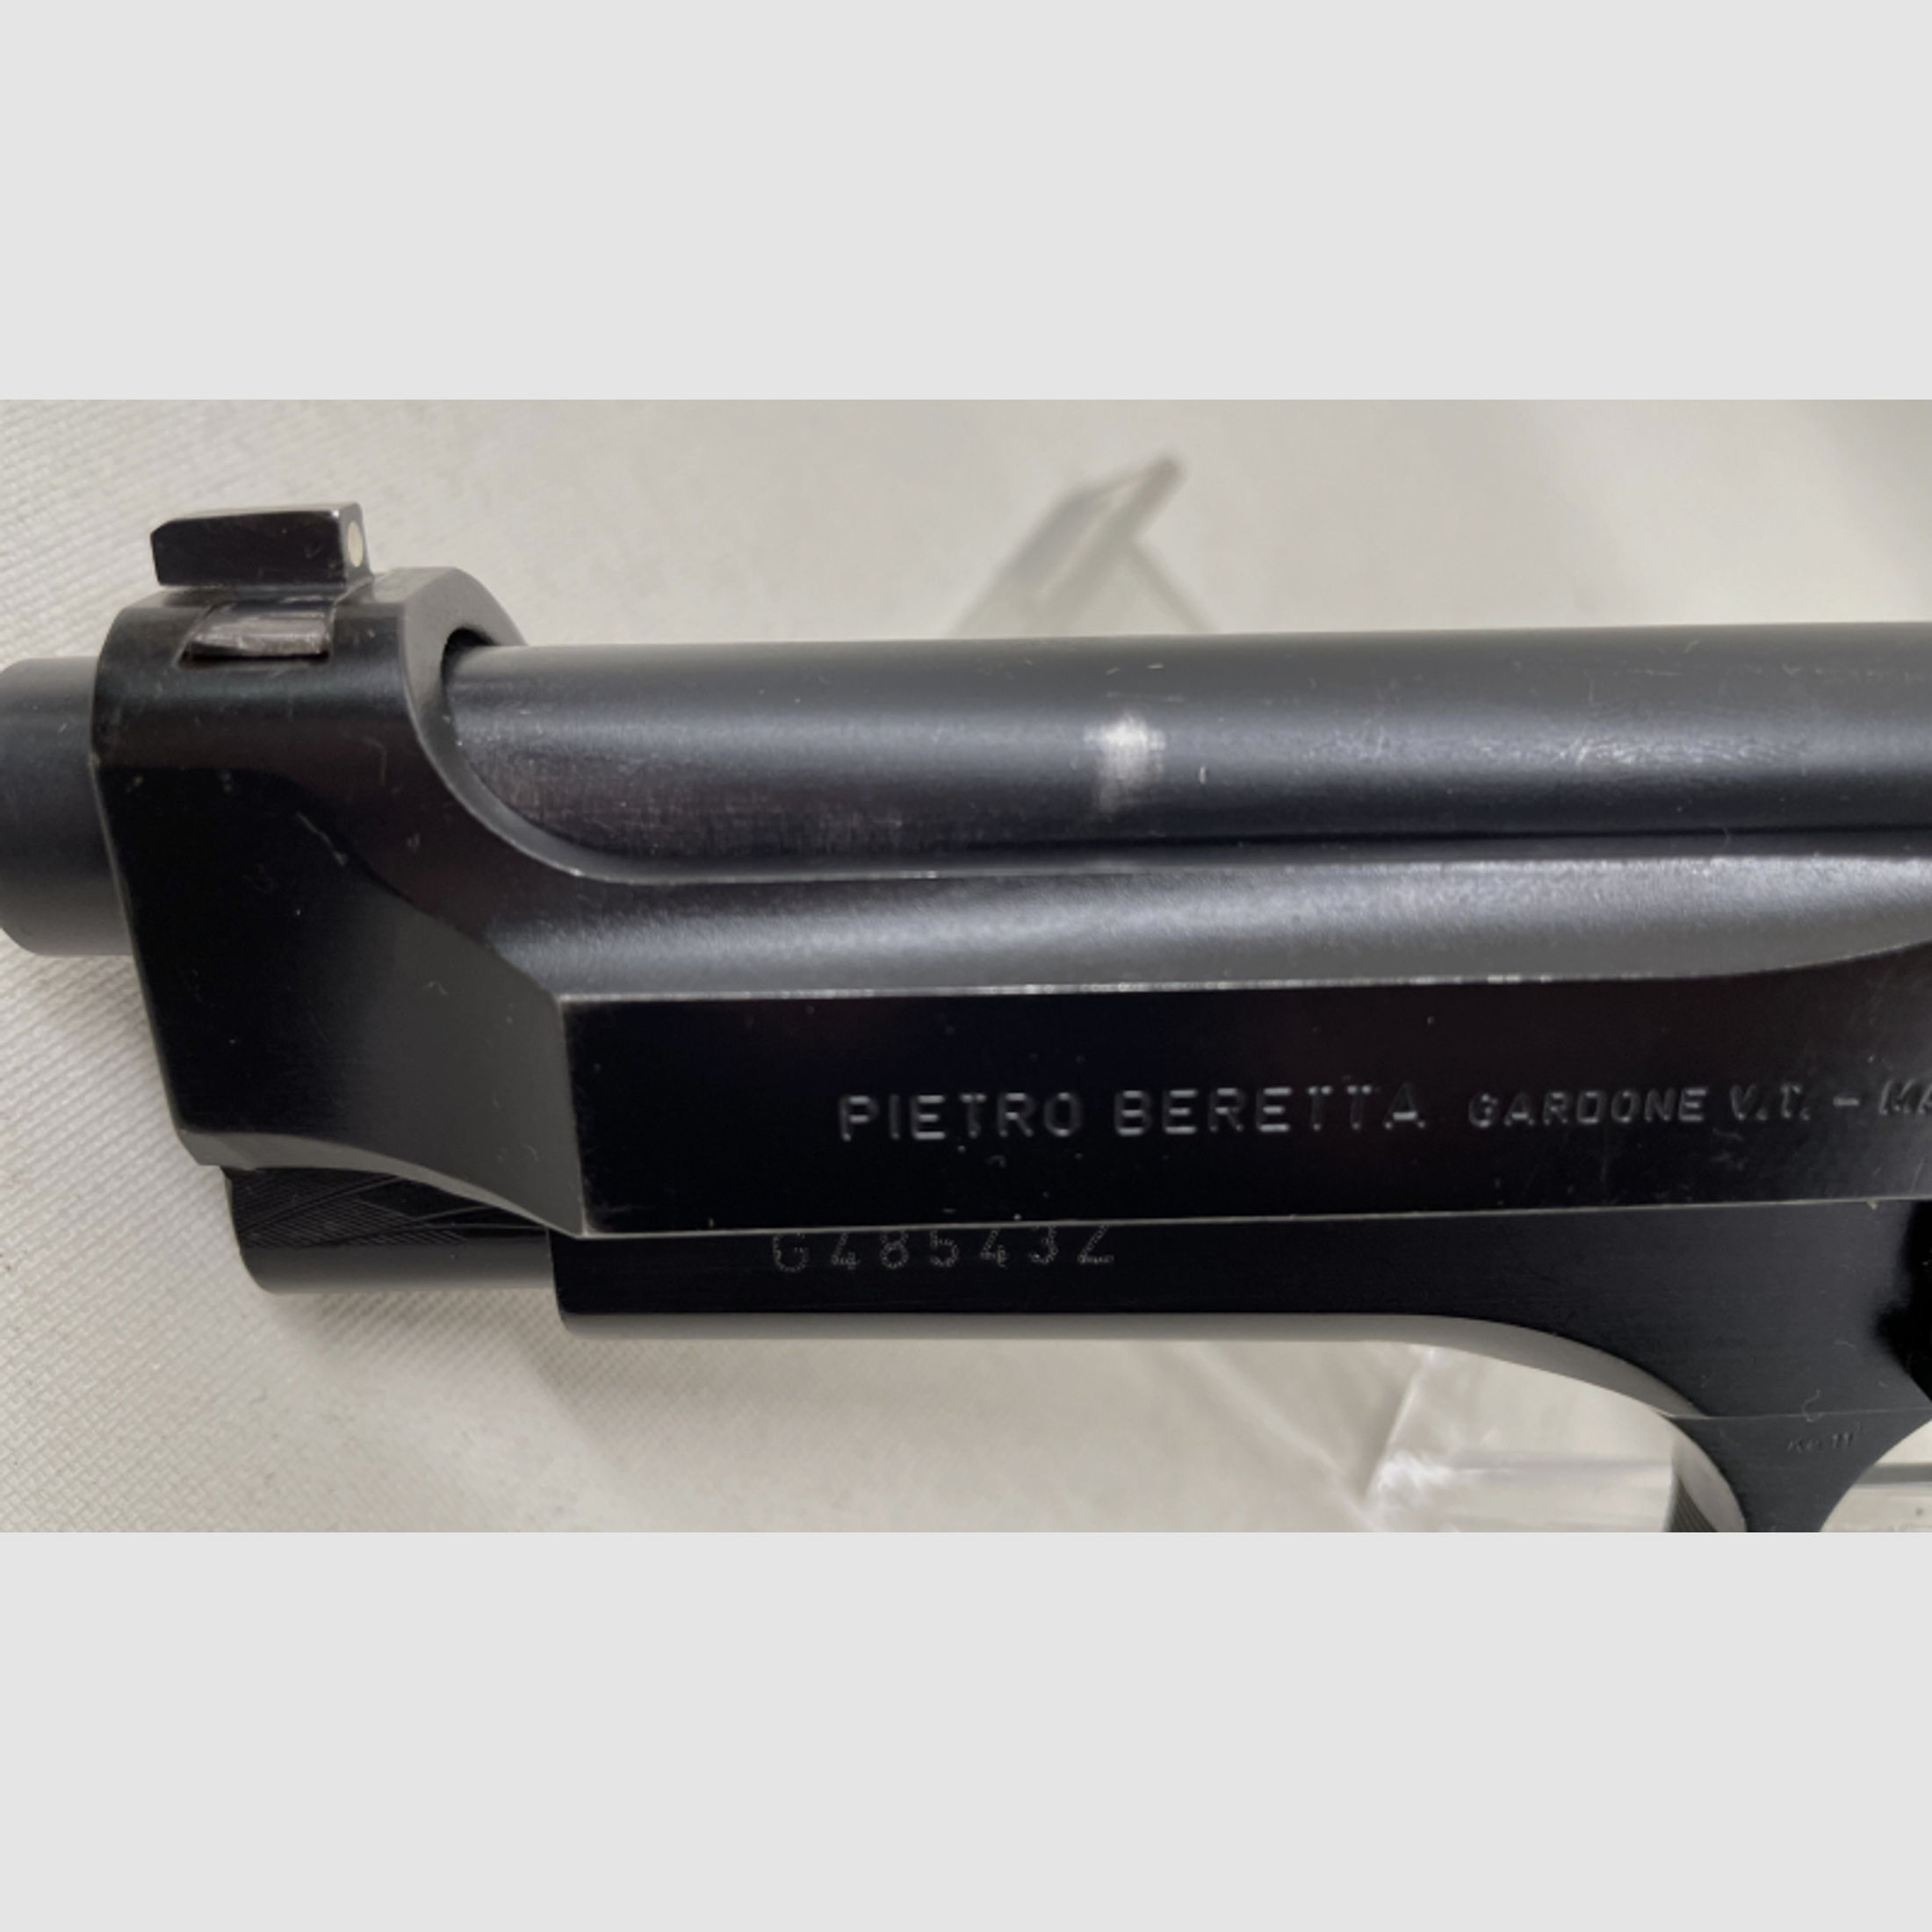 Beretta 92 FS 5" Kal. 9mmLuger